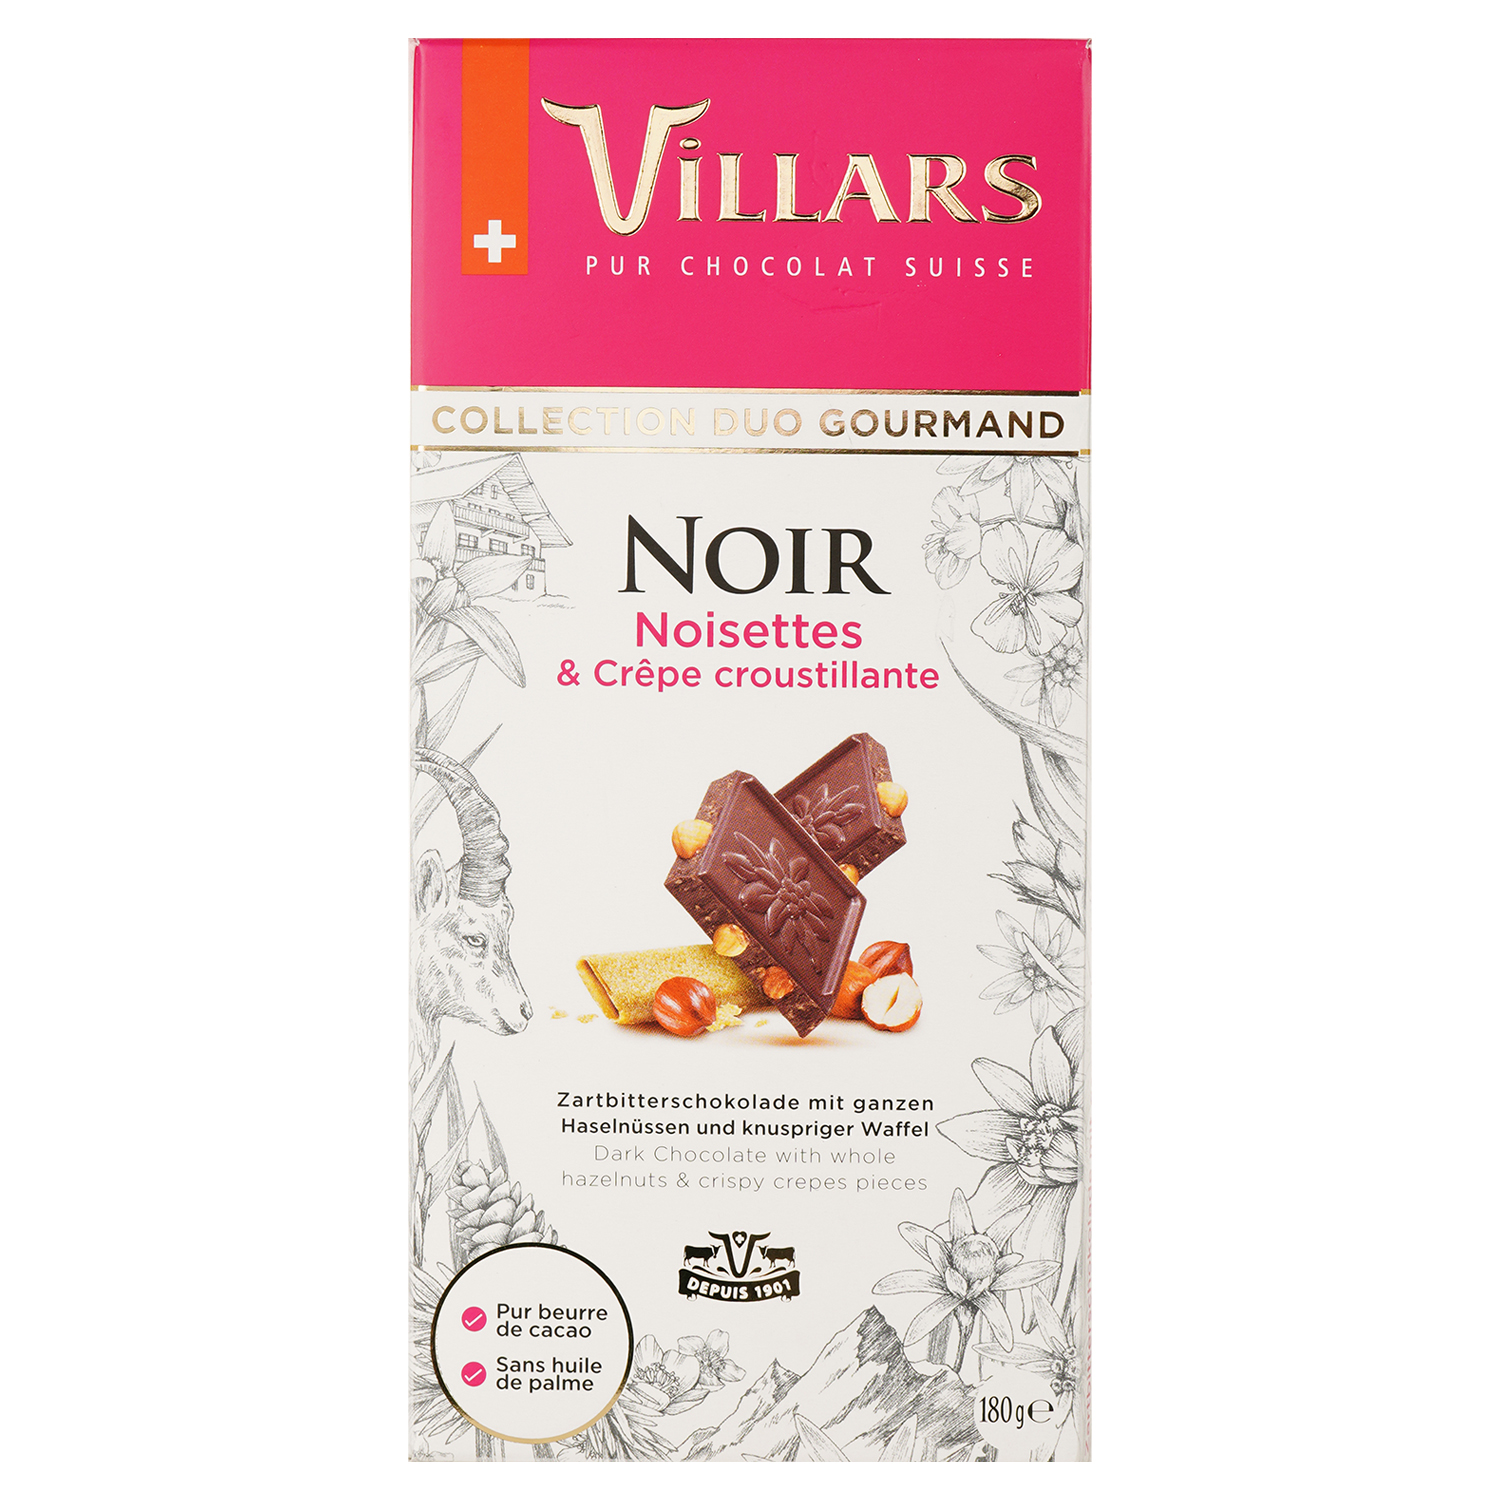 Шоколад черный Villars Collection Duo Gourmand Noir Noisettes & Crepe Croustillante с фундуком и кусочками печенья 180 г - фото 1